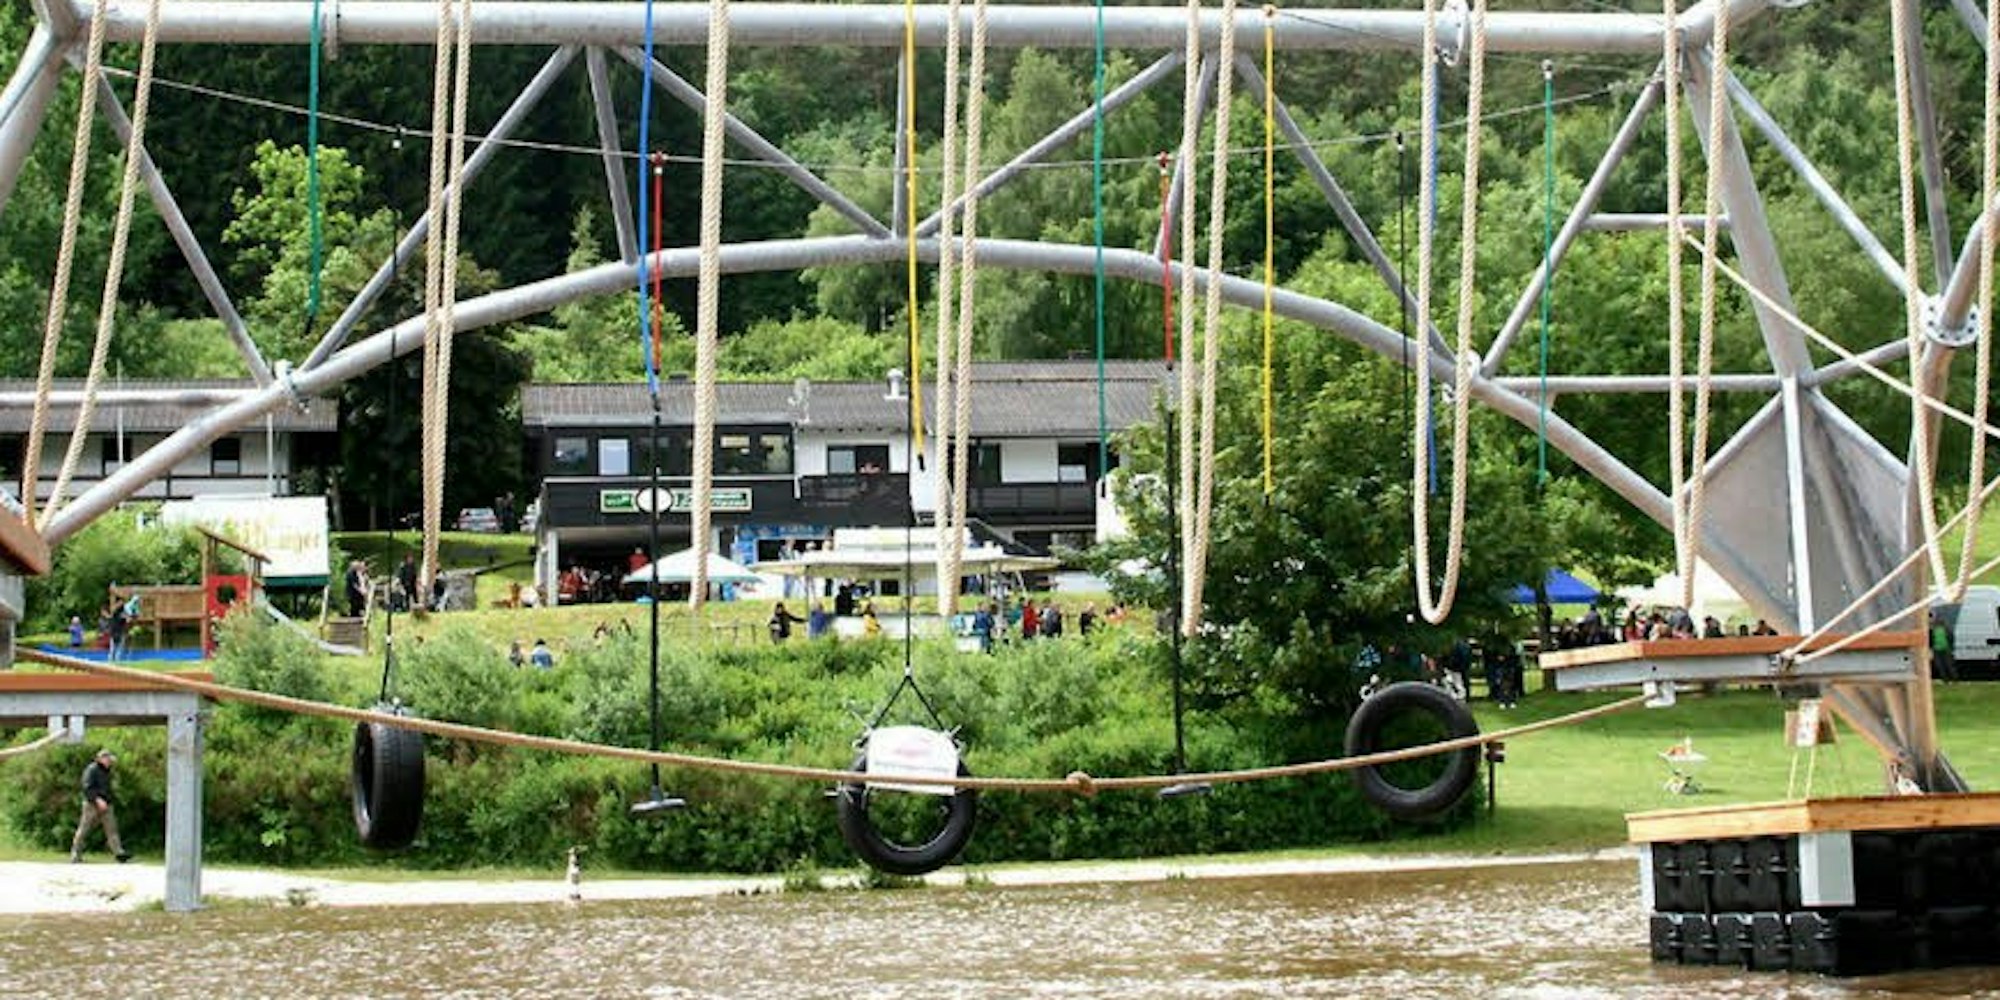 Einzigartig in Nordrhein-Westfalen ist der Wasserseilgarten am Kronenburger See in Dahlem (Eifel). Die seile hängen nur bis 1,50 Meter über dem Wasser. Ein Sturz ist nicht tragisch. Der Eintritt frei. (Foto: Lieser)